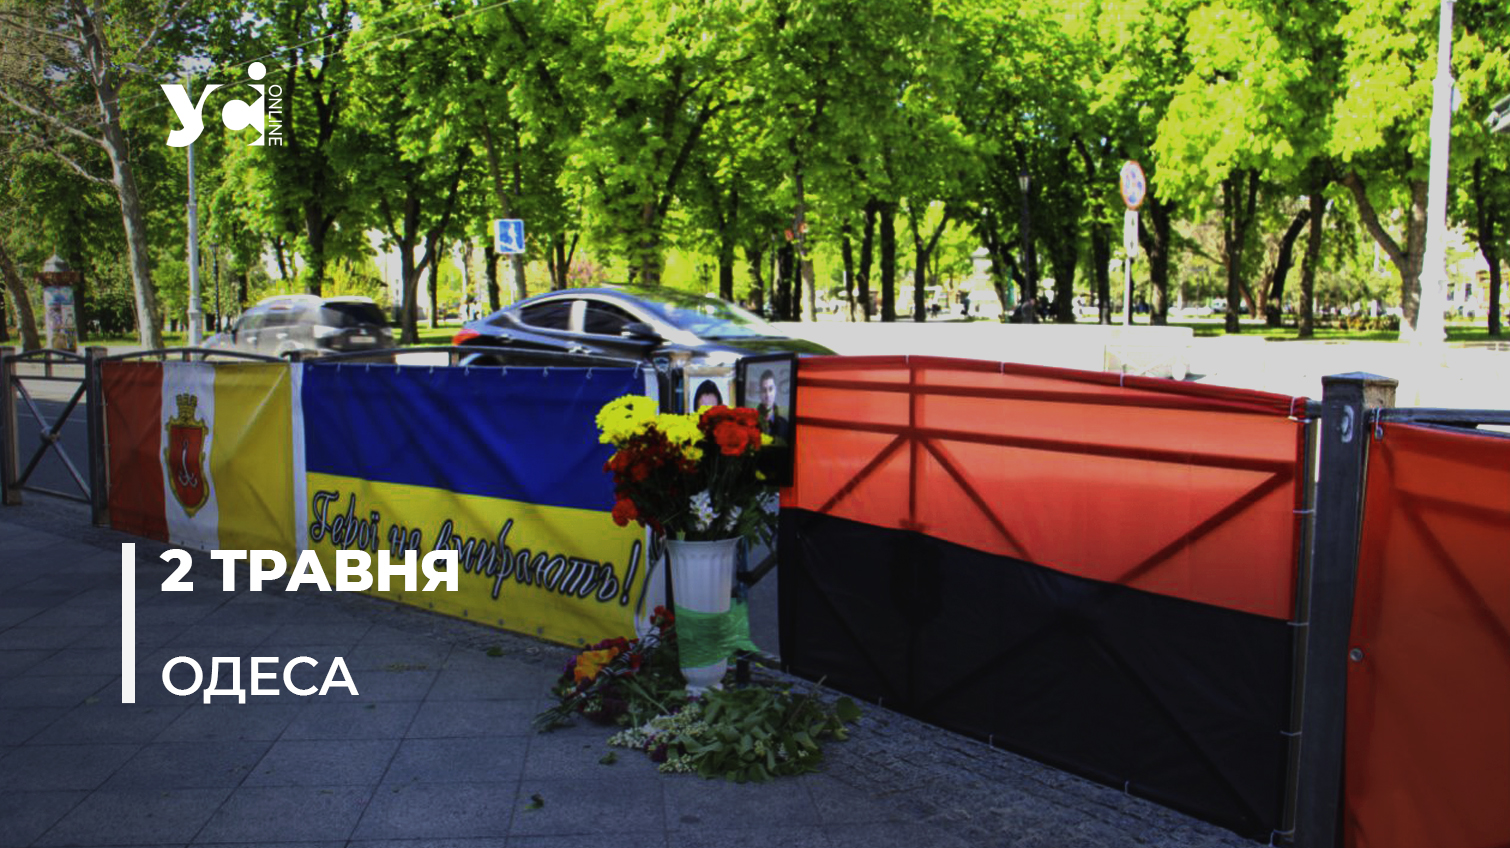 2 травня в Одесі: ситуація в місті спокійна (фото, відео) «фото»